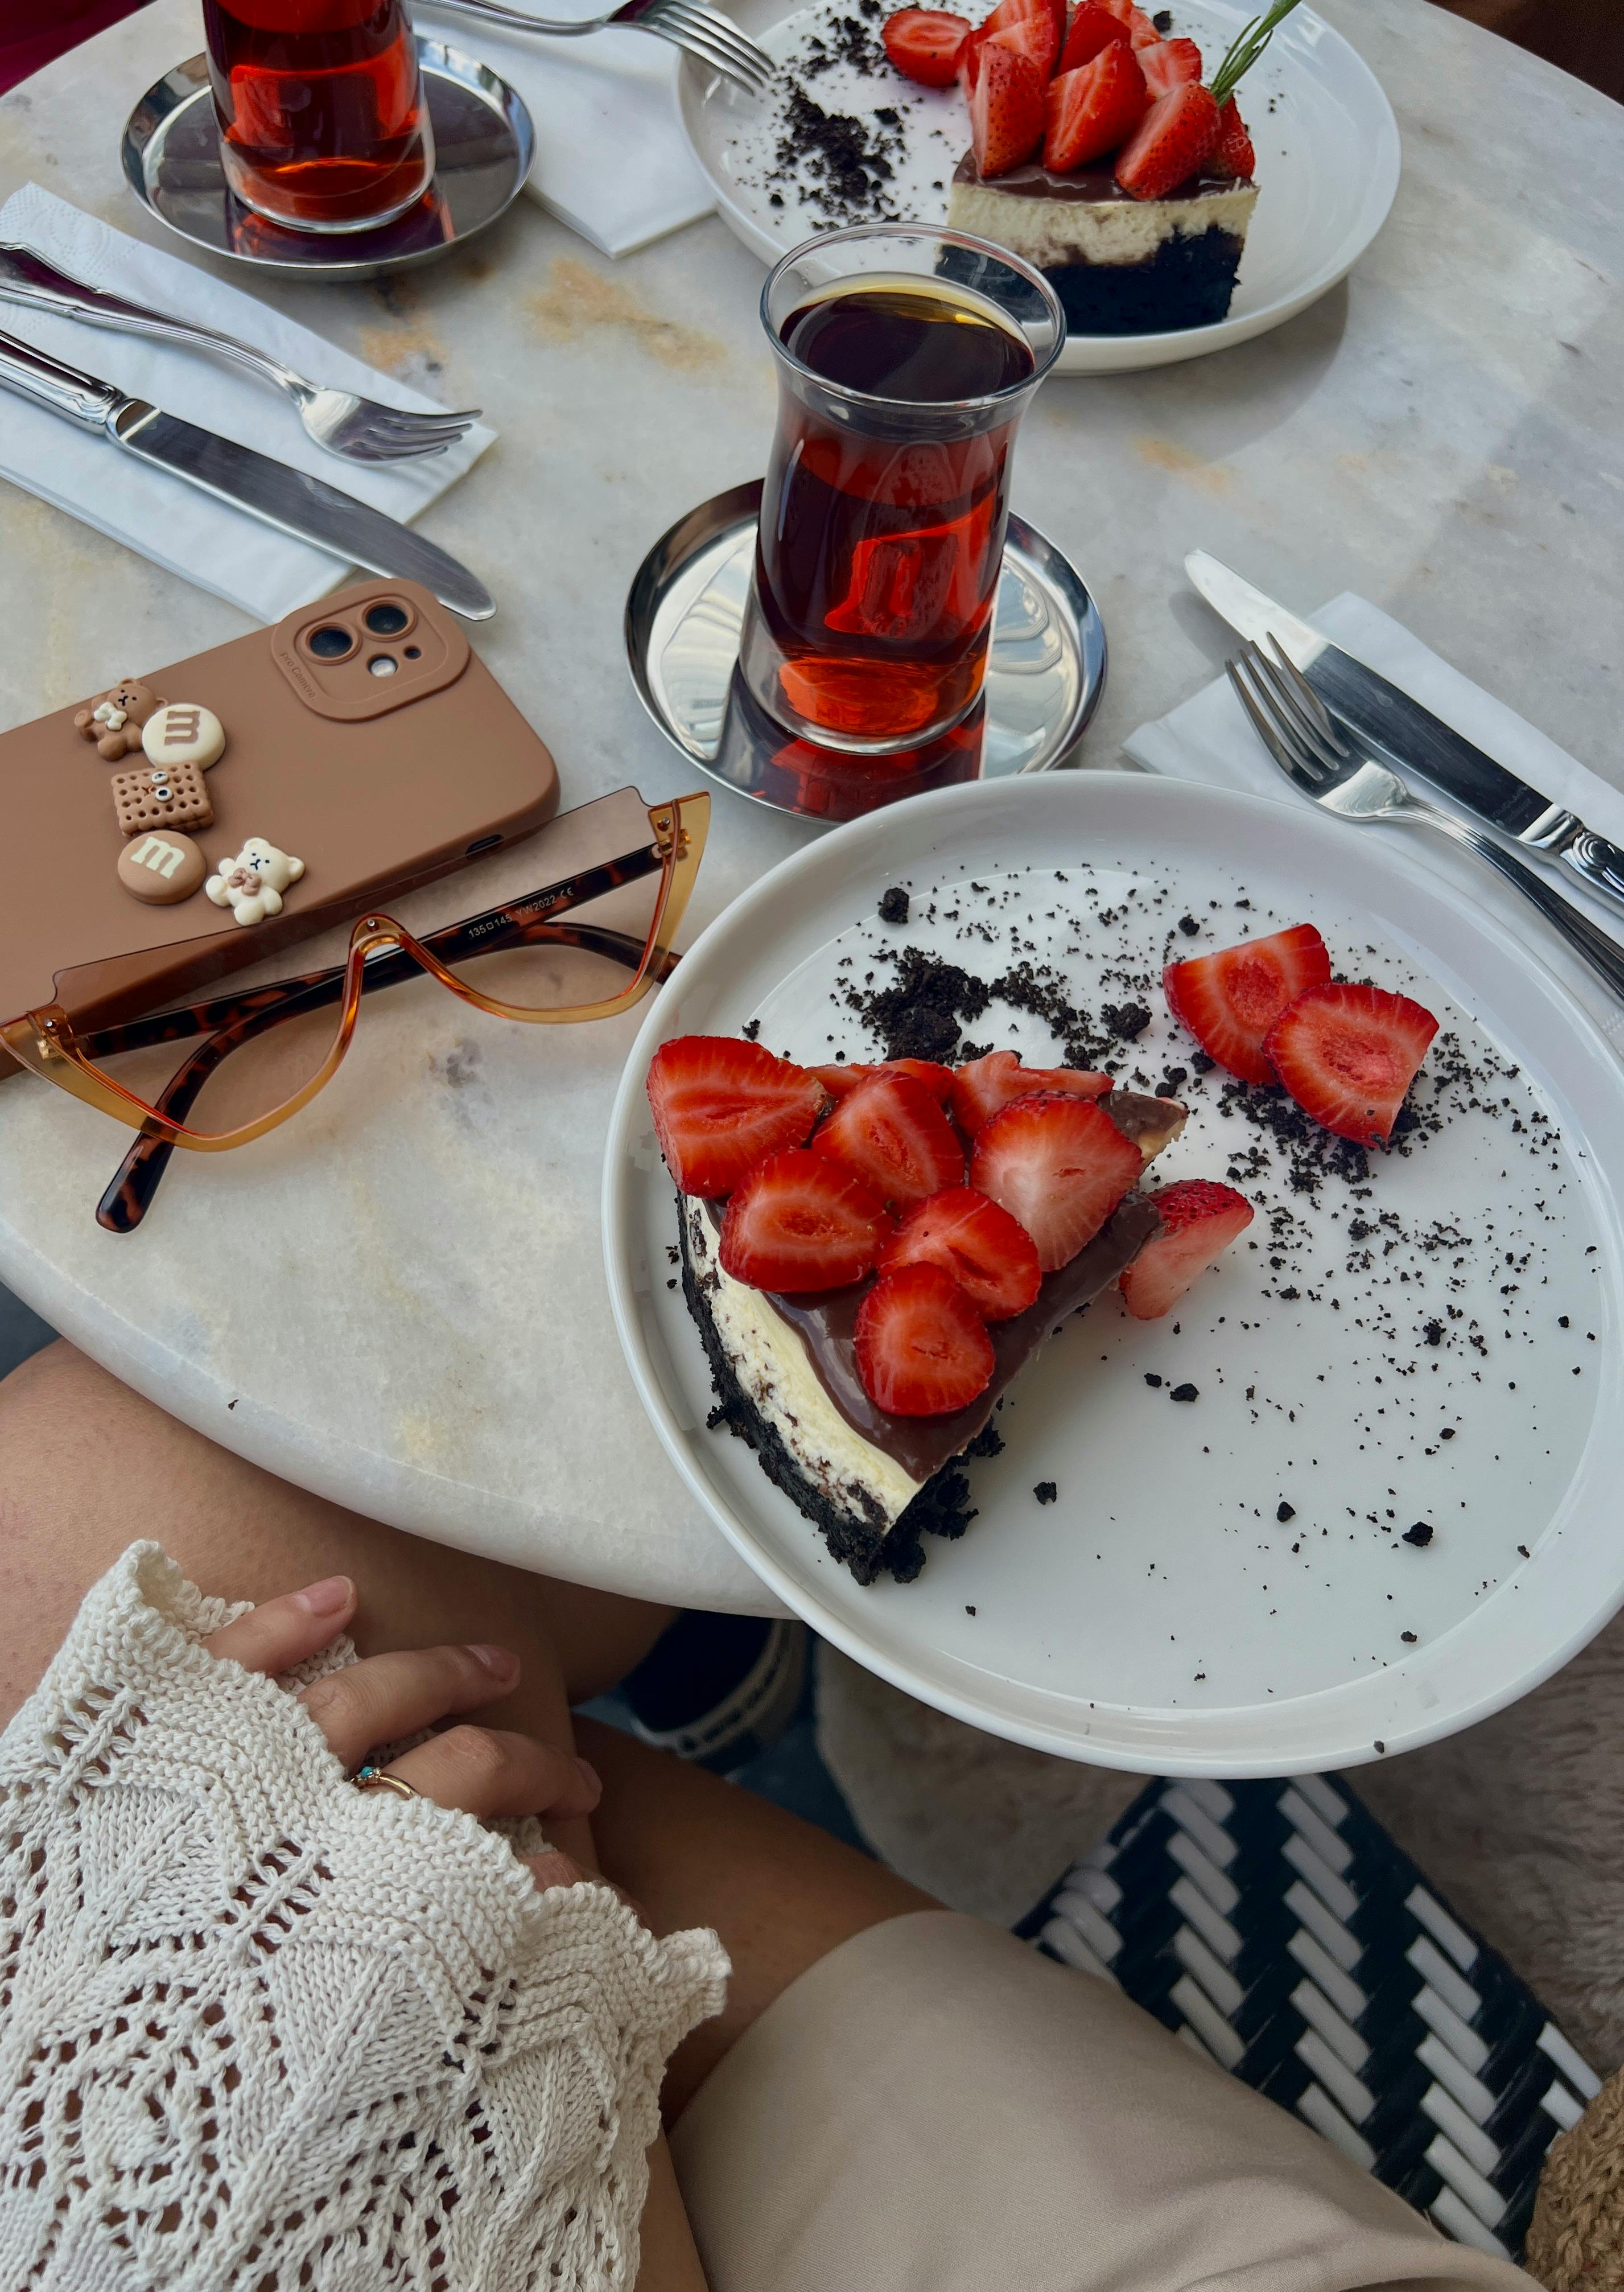 Quelqu'un qui mange une part de gâteau avec des fraises | Source : Pexels